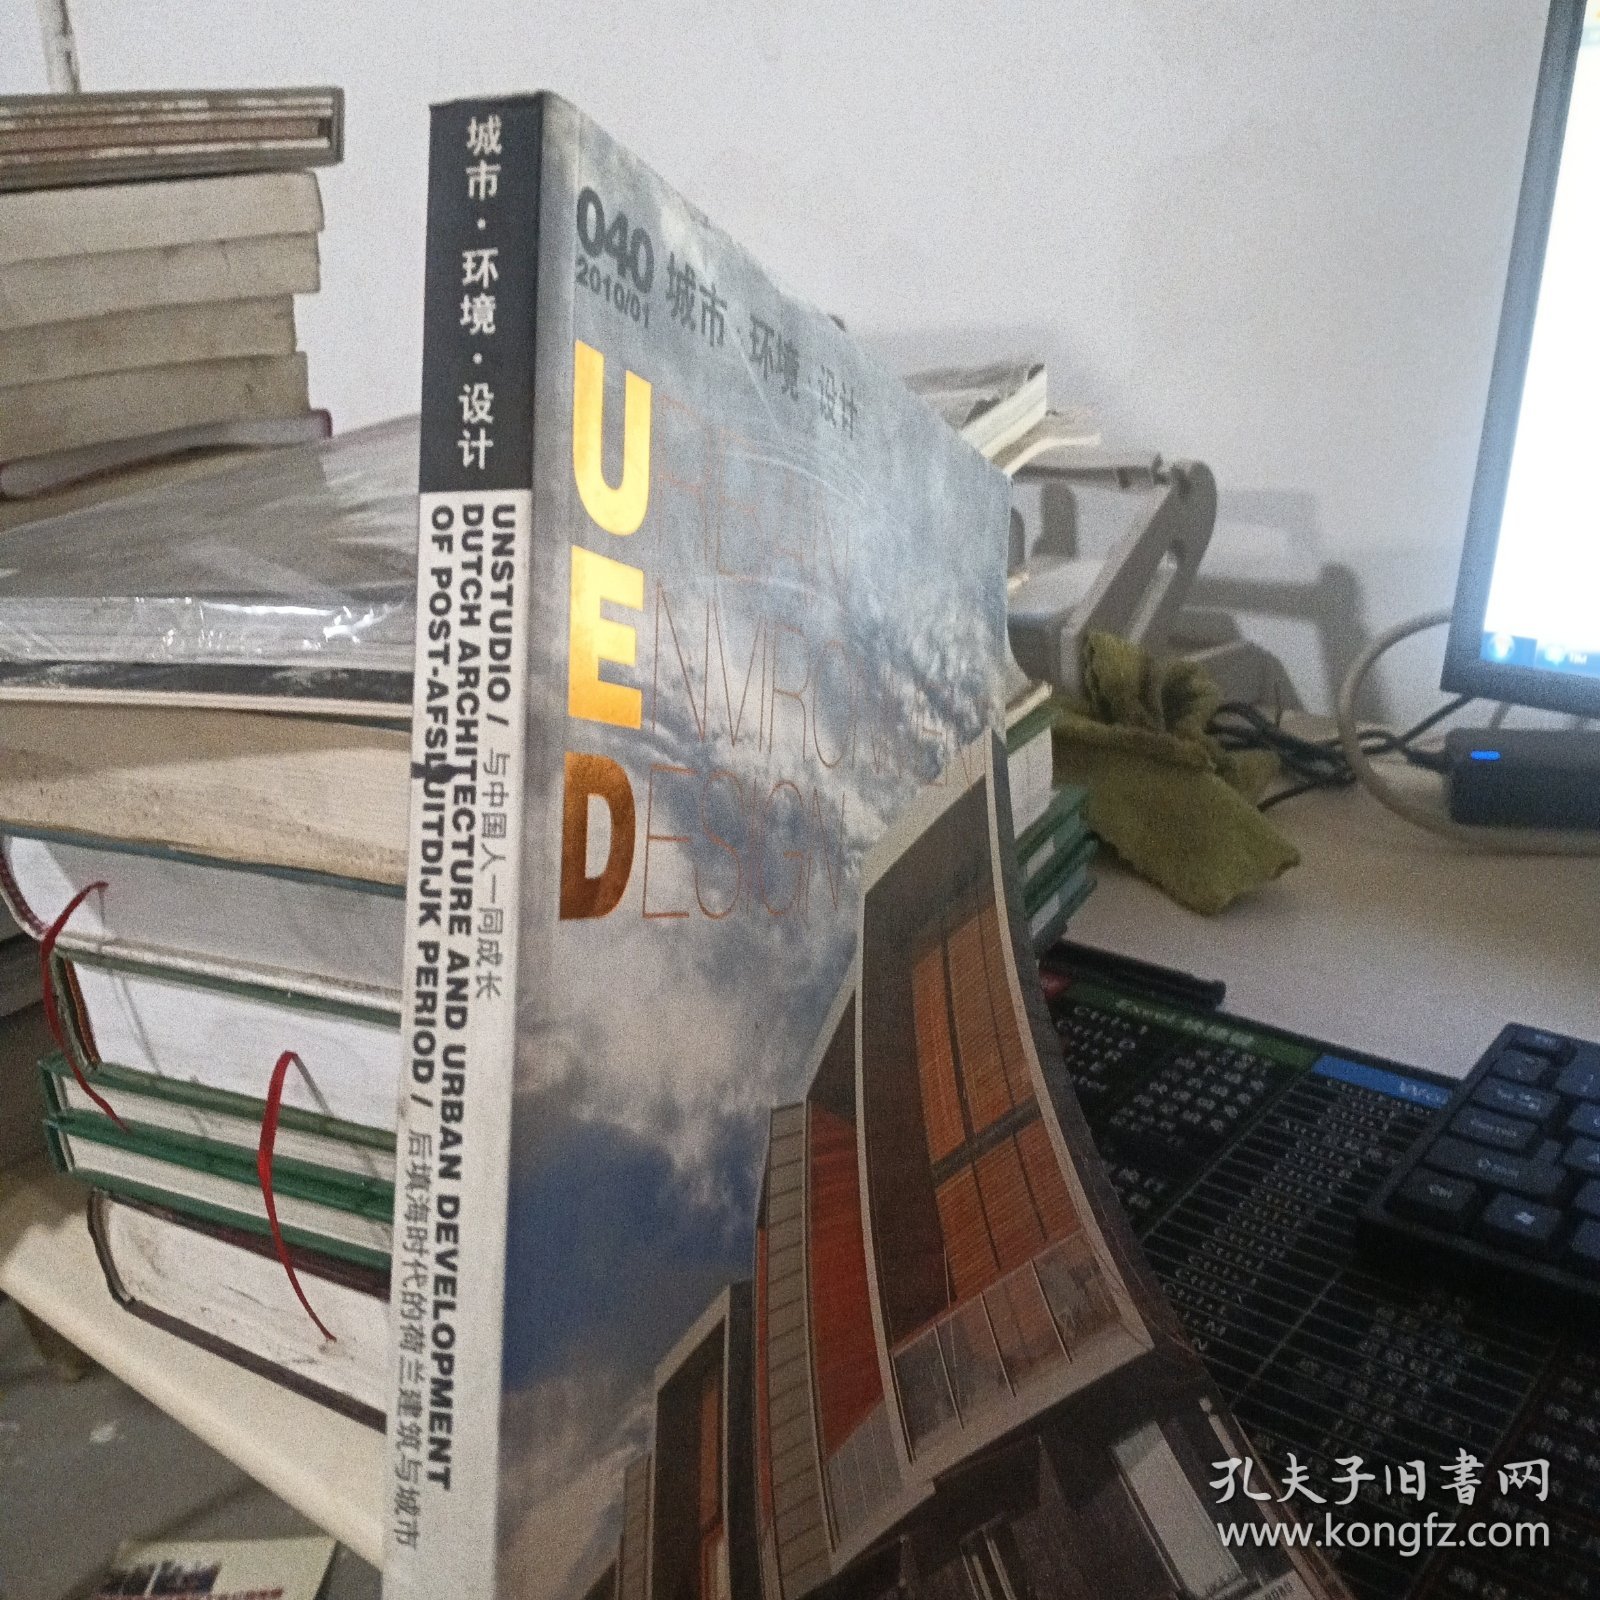 中国当代城市环境设计的美学分析与批判